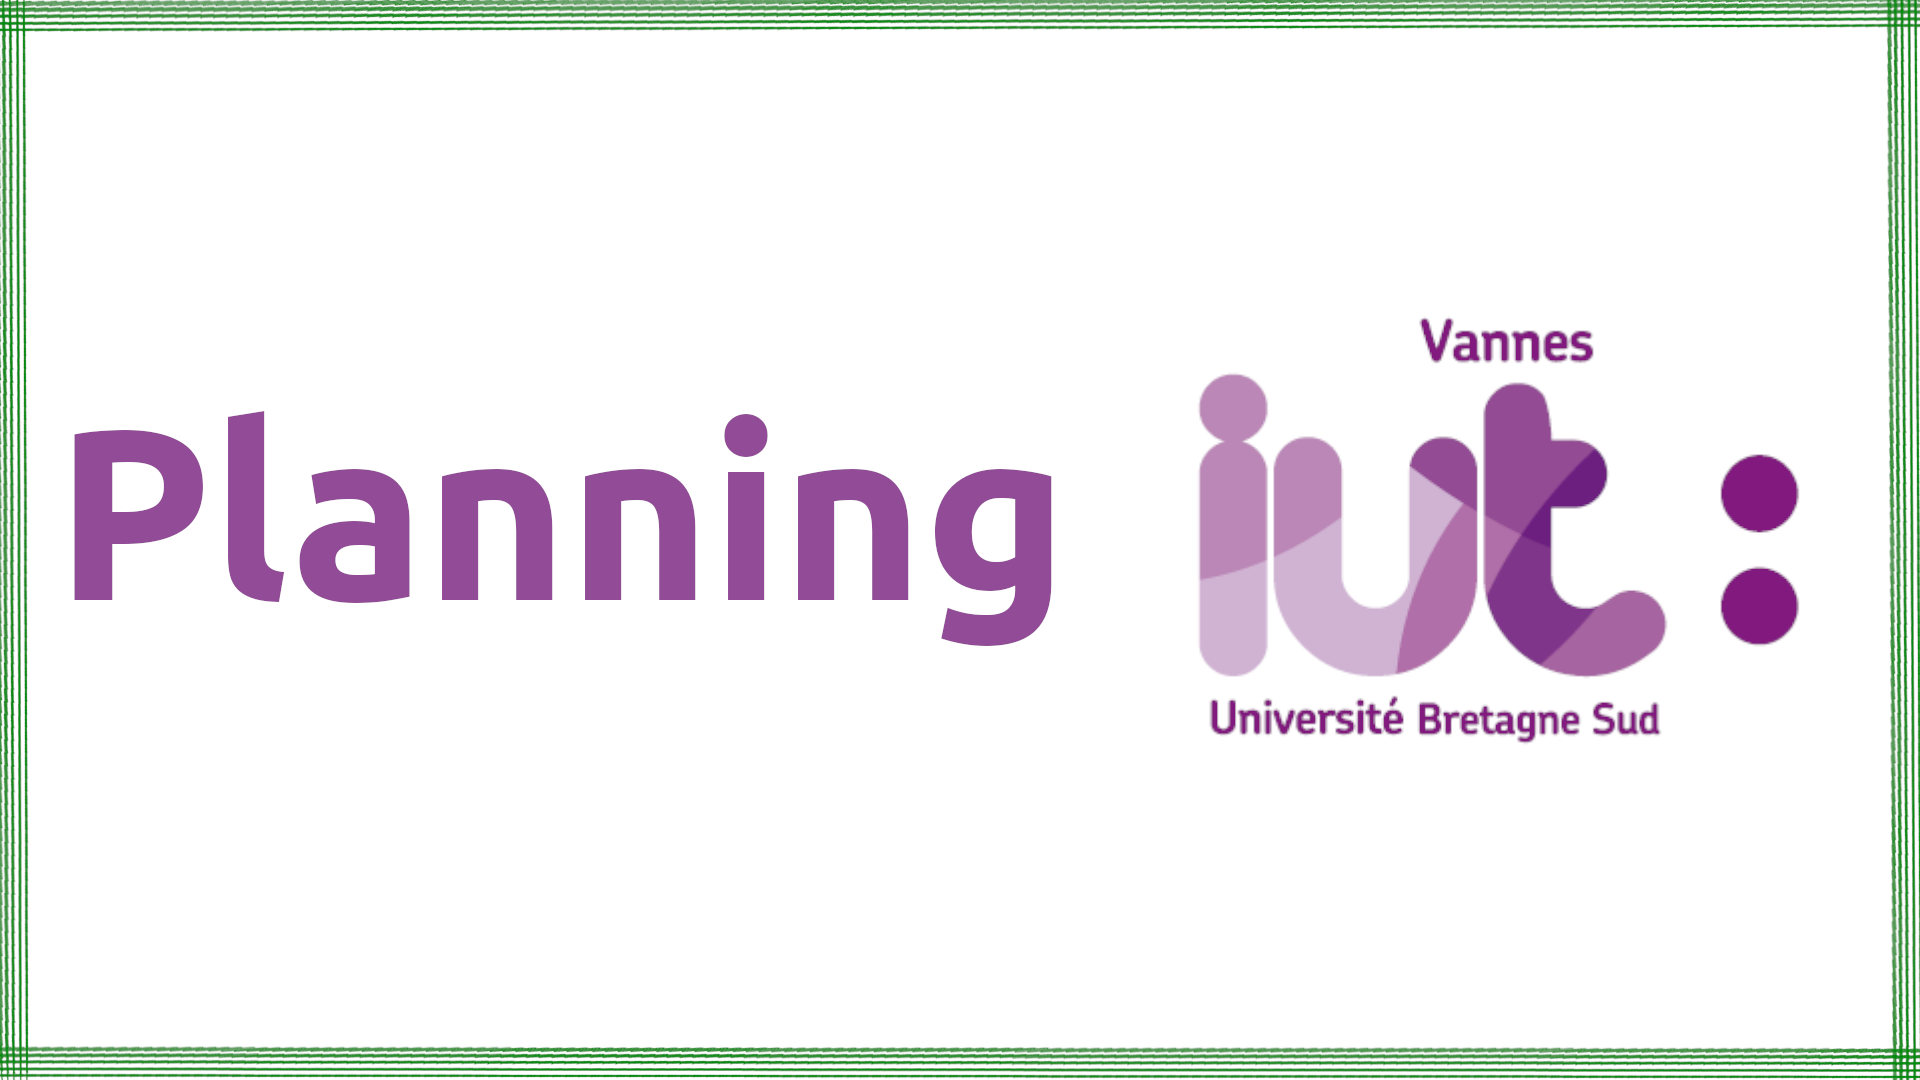 Fond de planning IUT Vannes